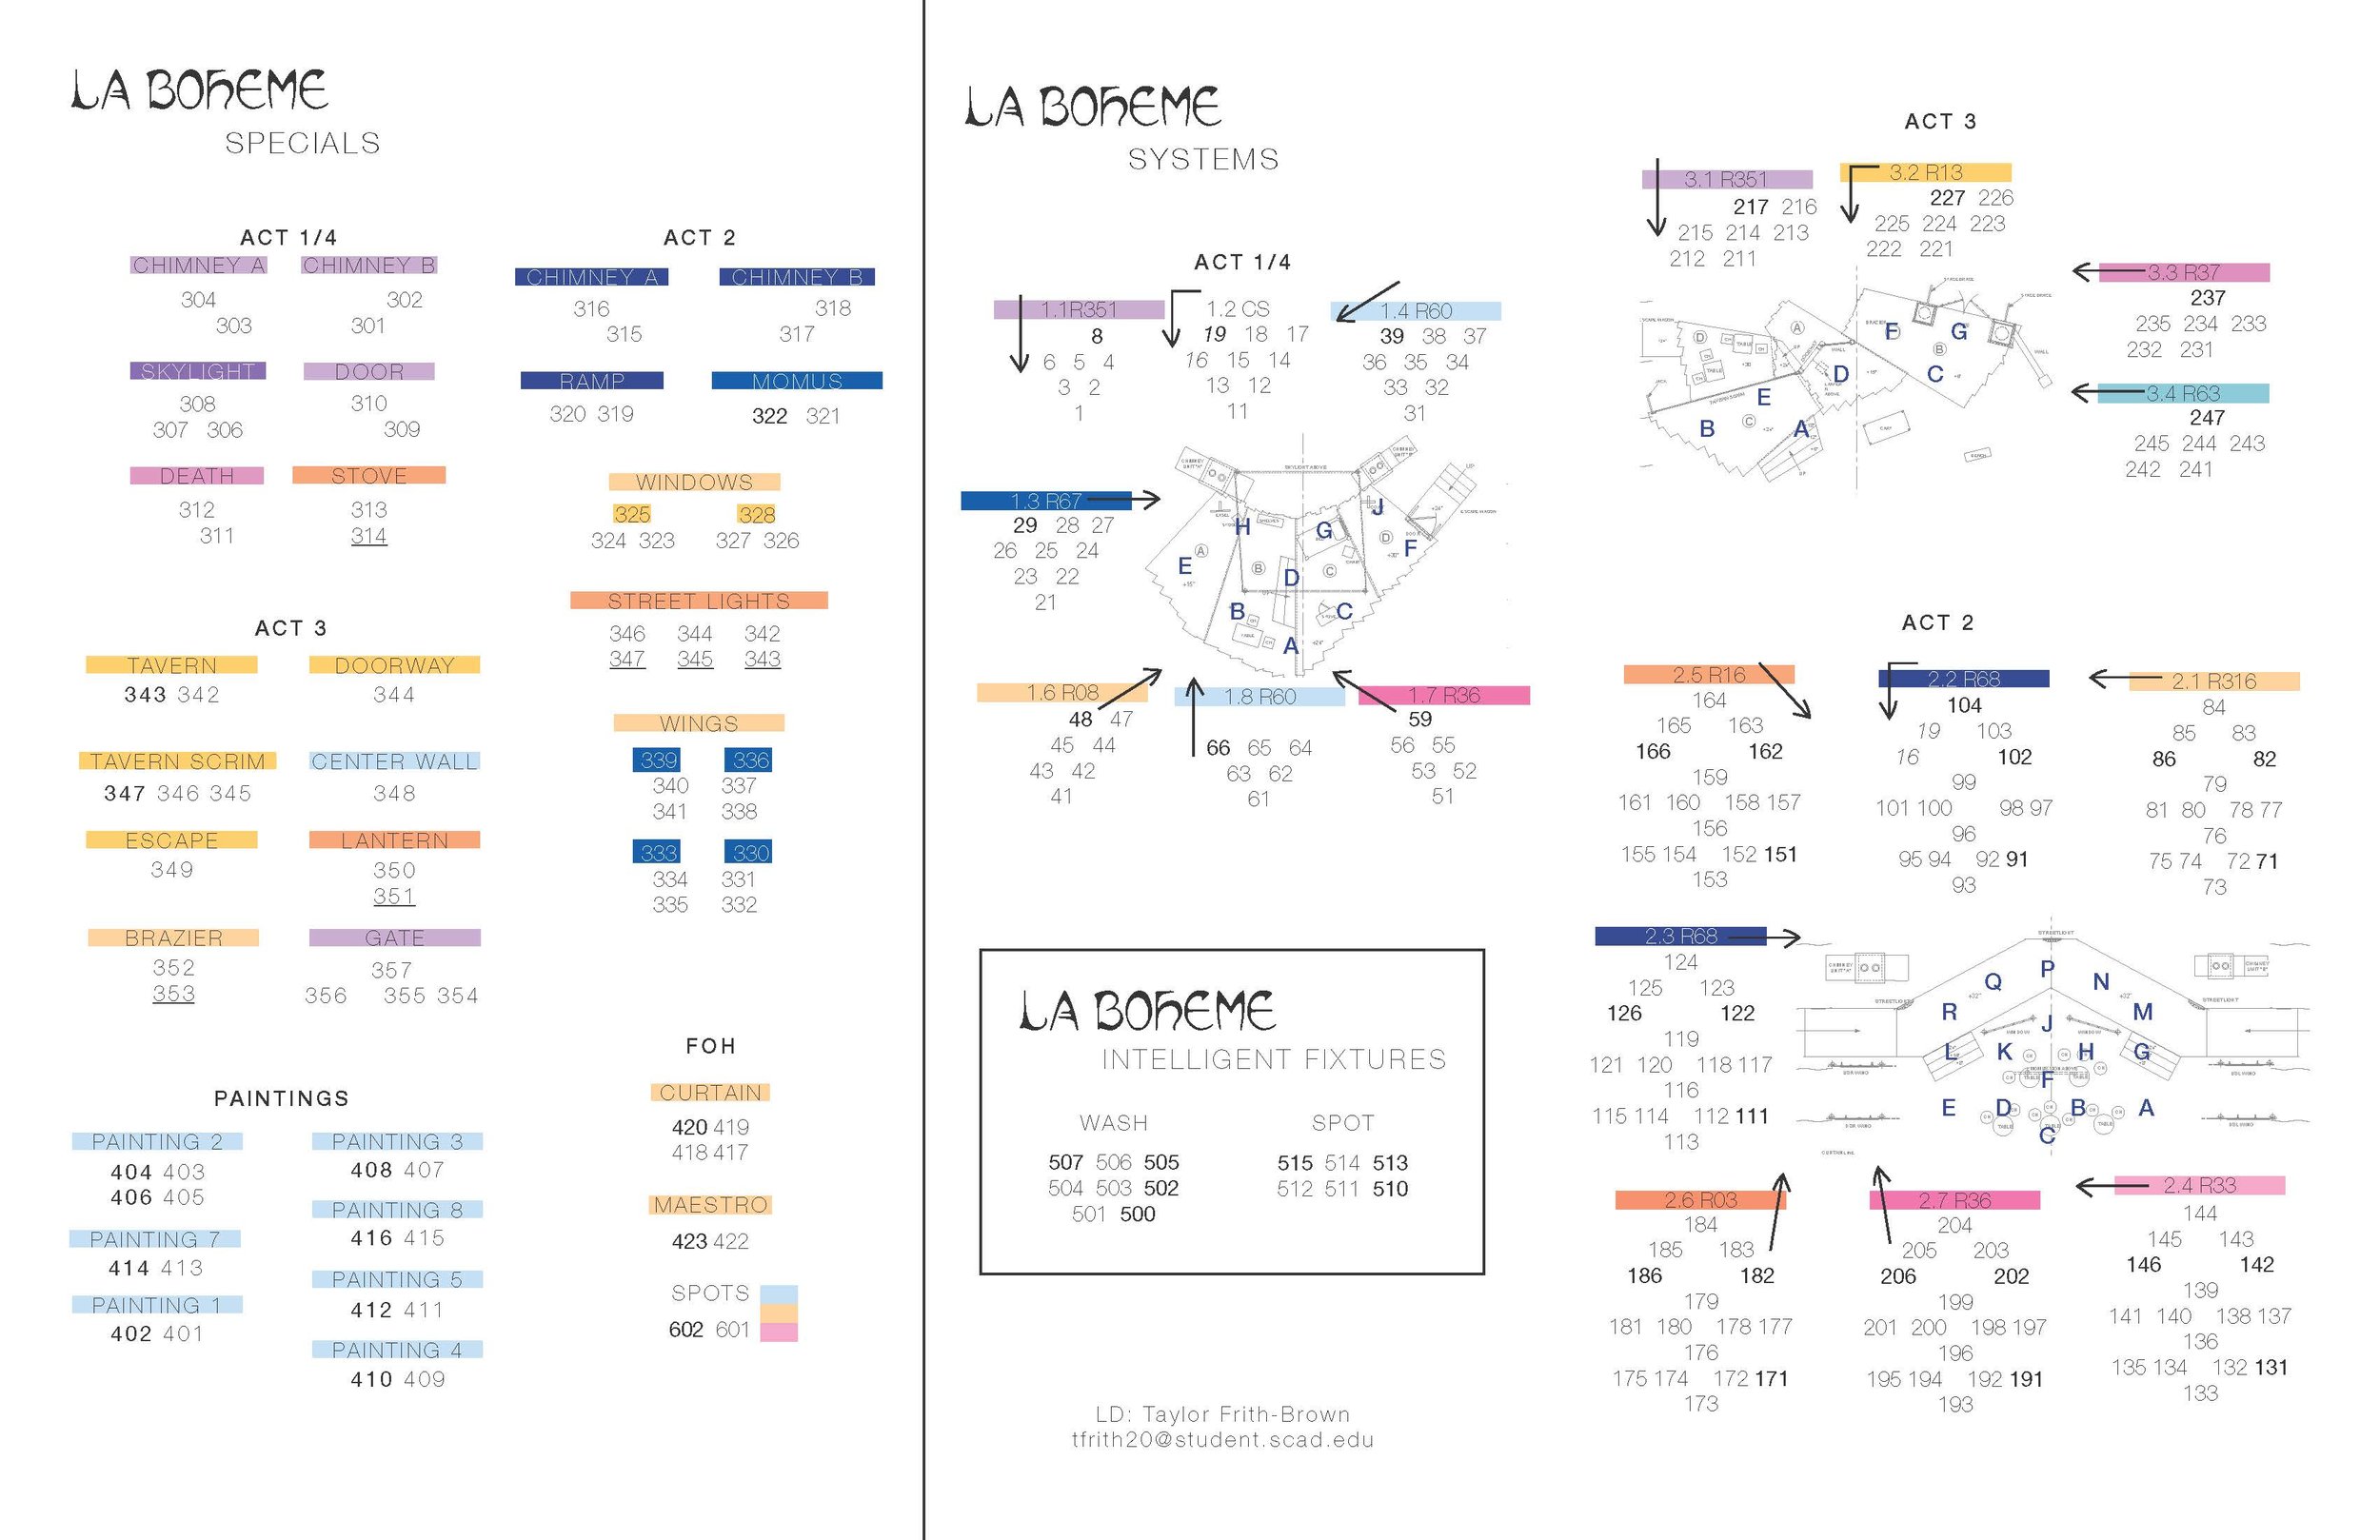  La Boheme Magic Sheet, part of a paper project 